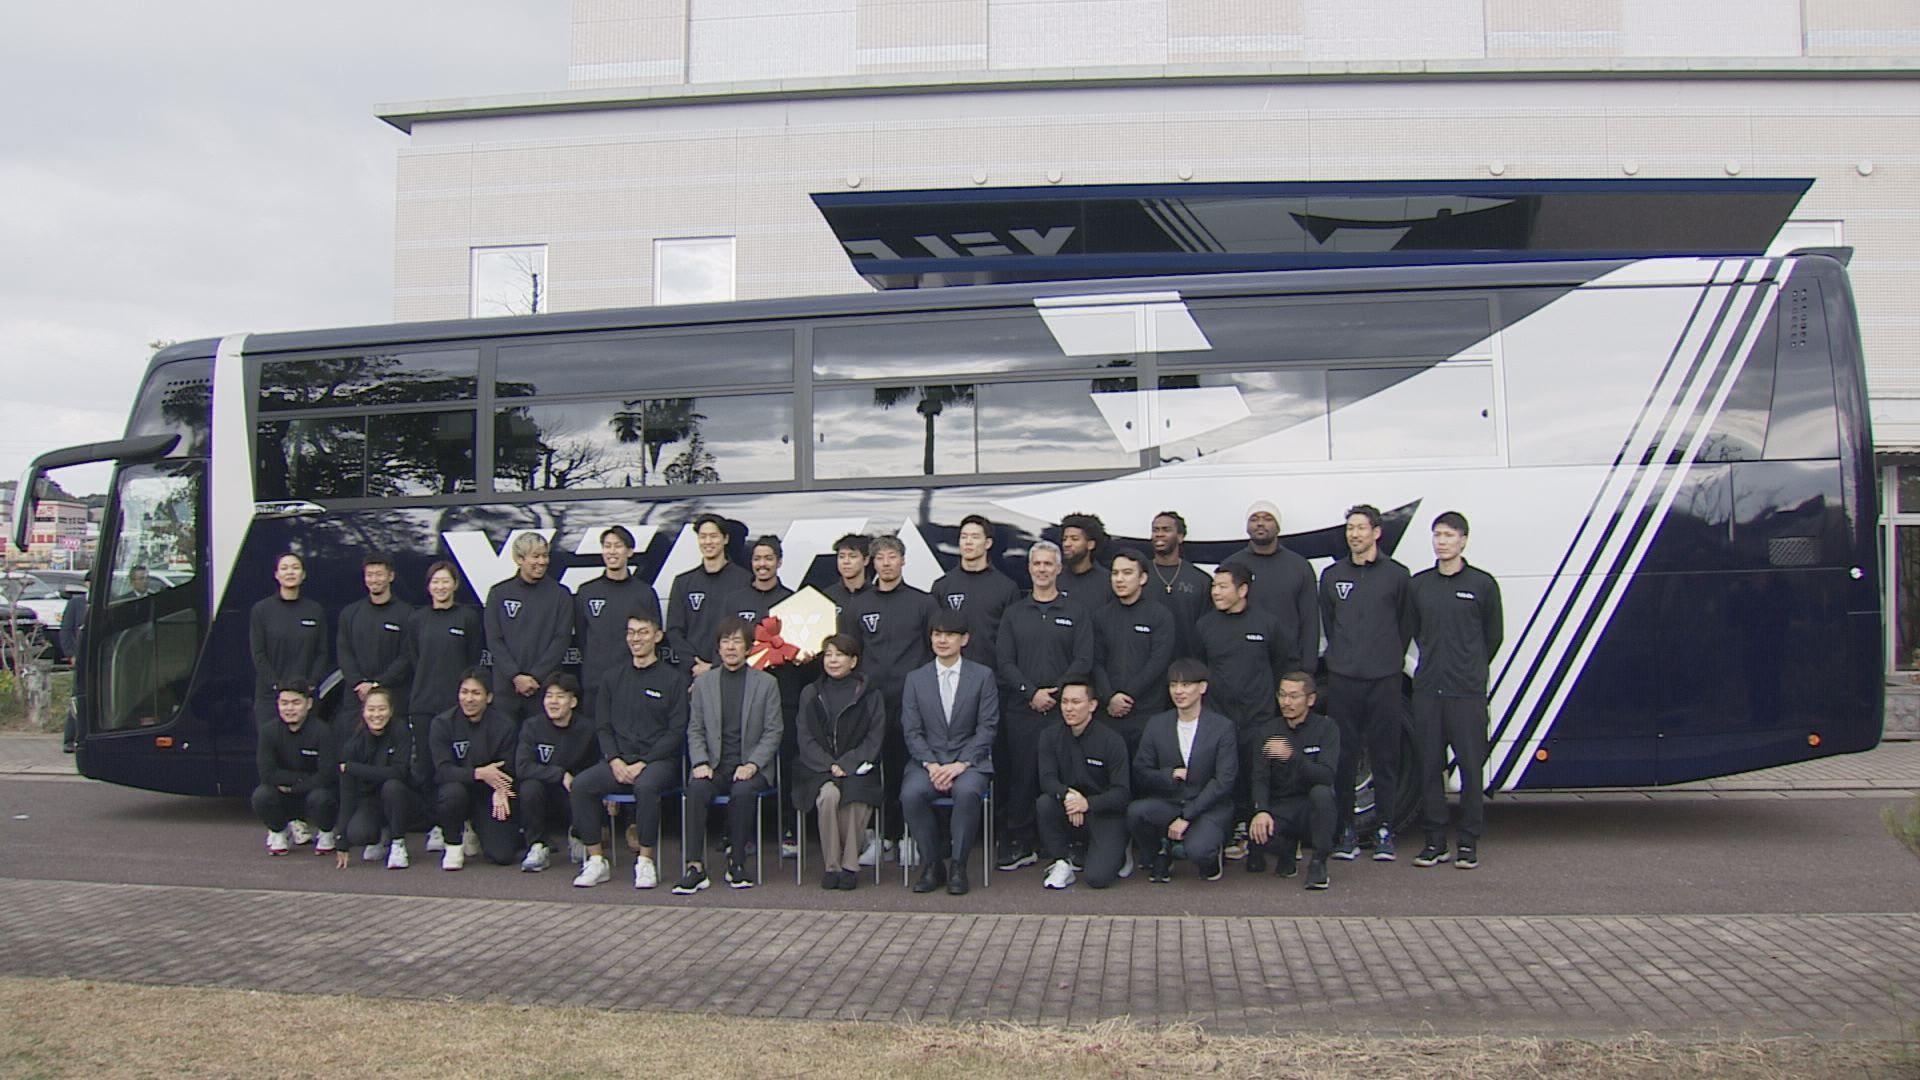 【長崎】ジャパネットたかた創業者・髙田明さんが長崎ヴェルカにチーム専用の初めてのバスを寄贈